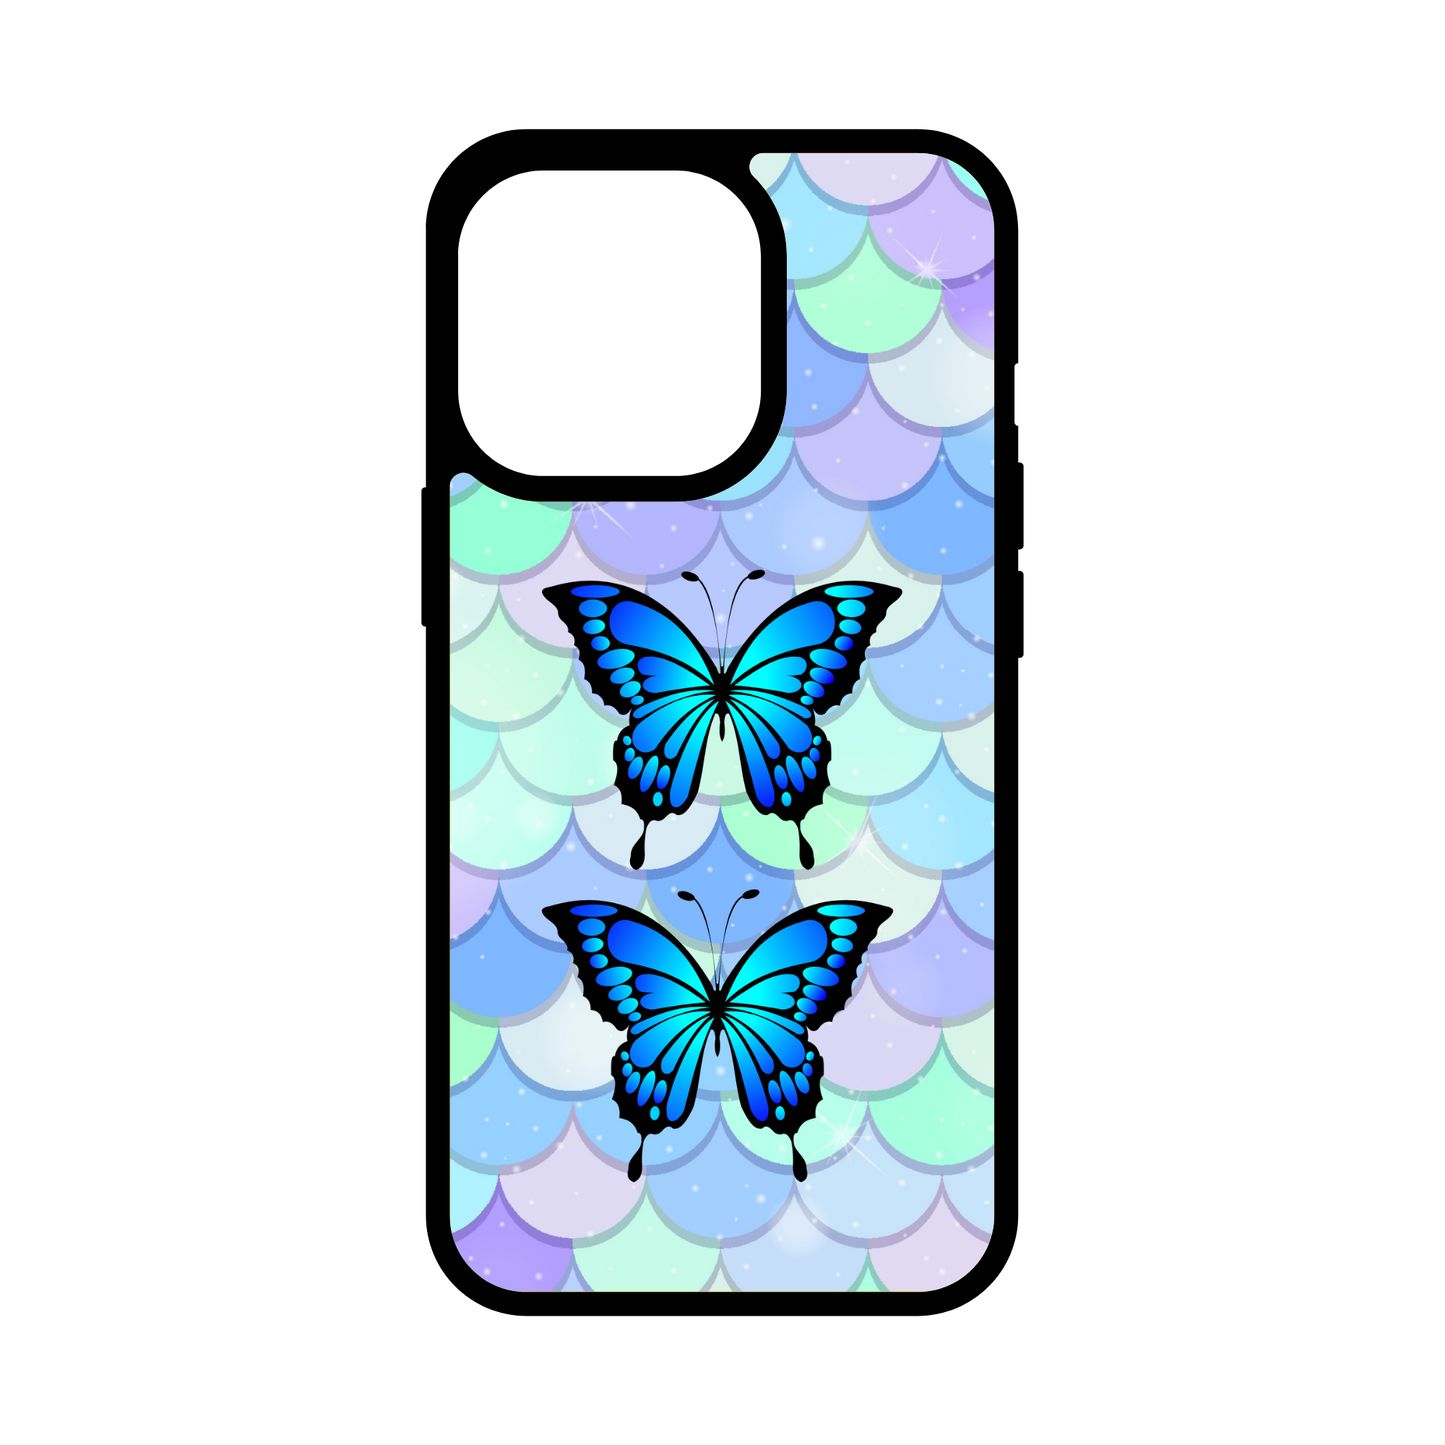 5.Butterfly